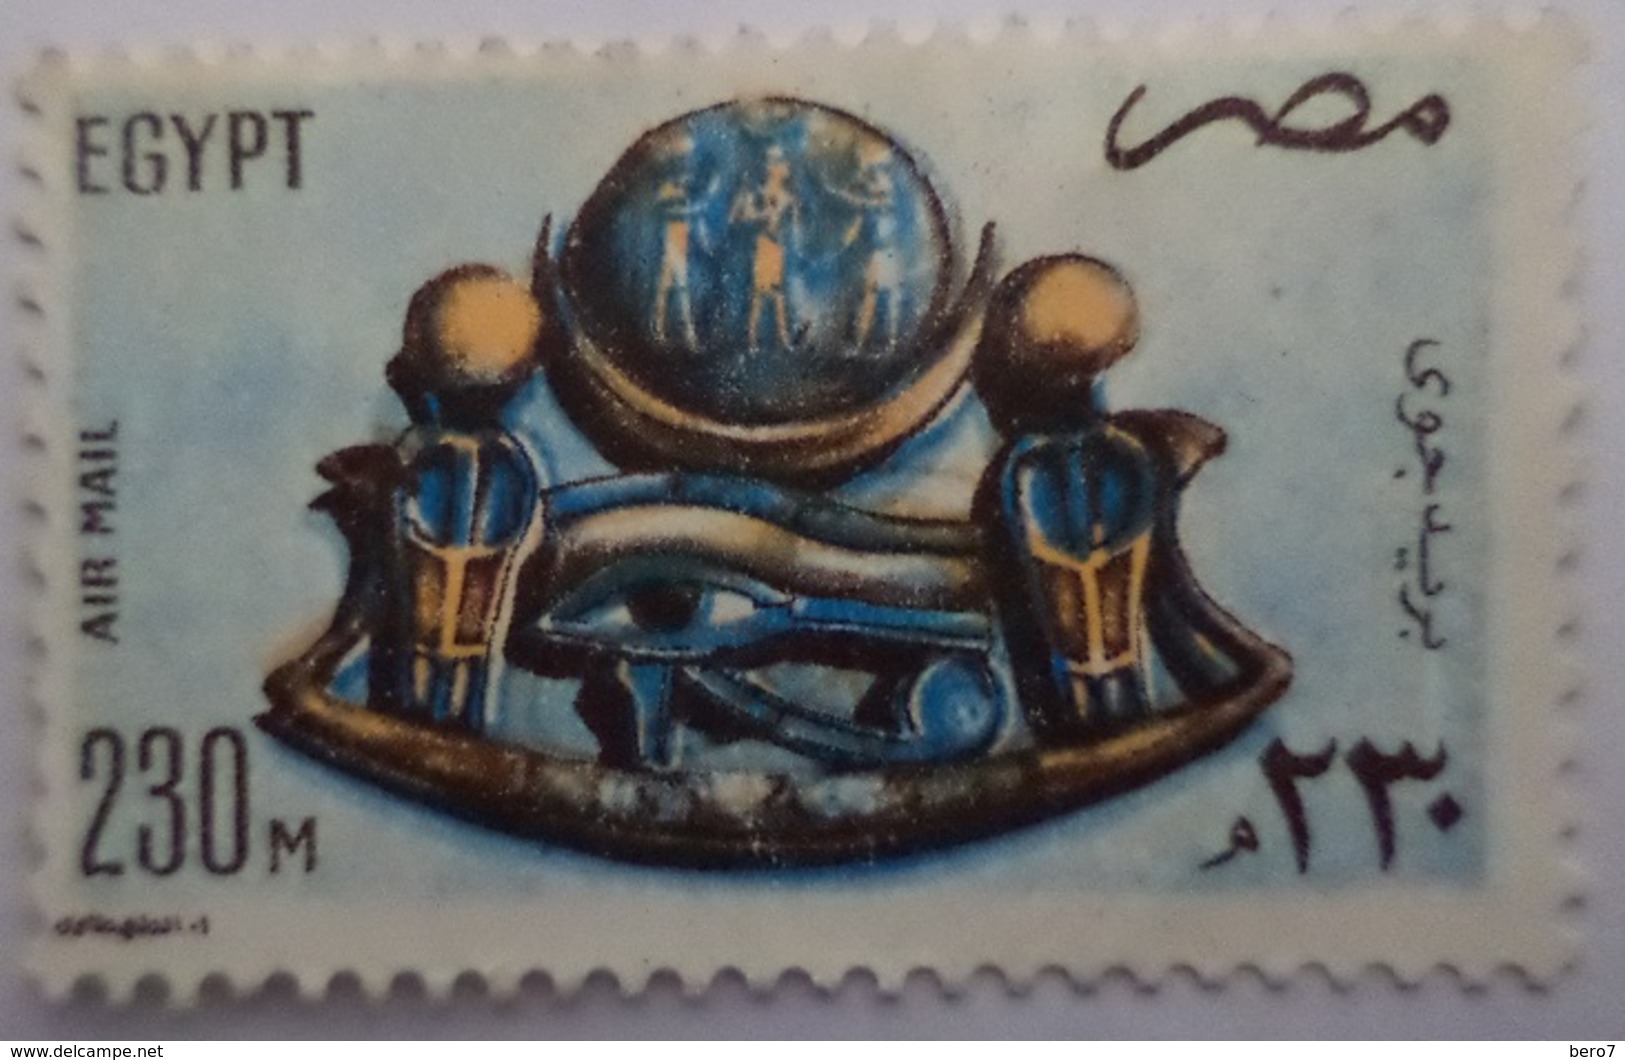 EGYPT - 1981- Old Egyptian Piece Of Jewelry- Air Mail -  (Egypte) (Egitto) (Ägypten) (Egipto) (Egypten) - Gebruikt